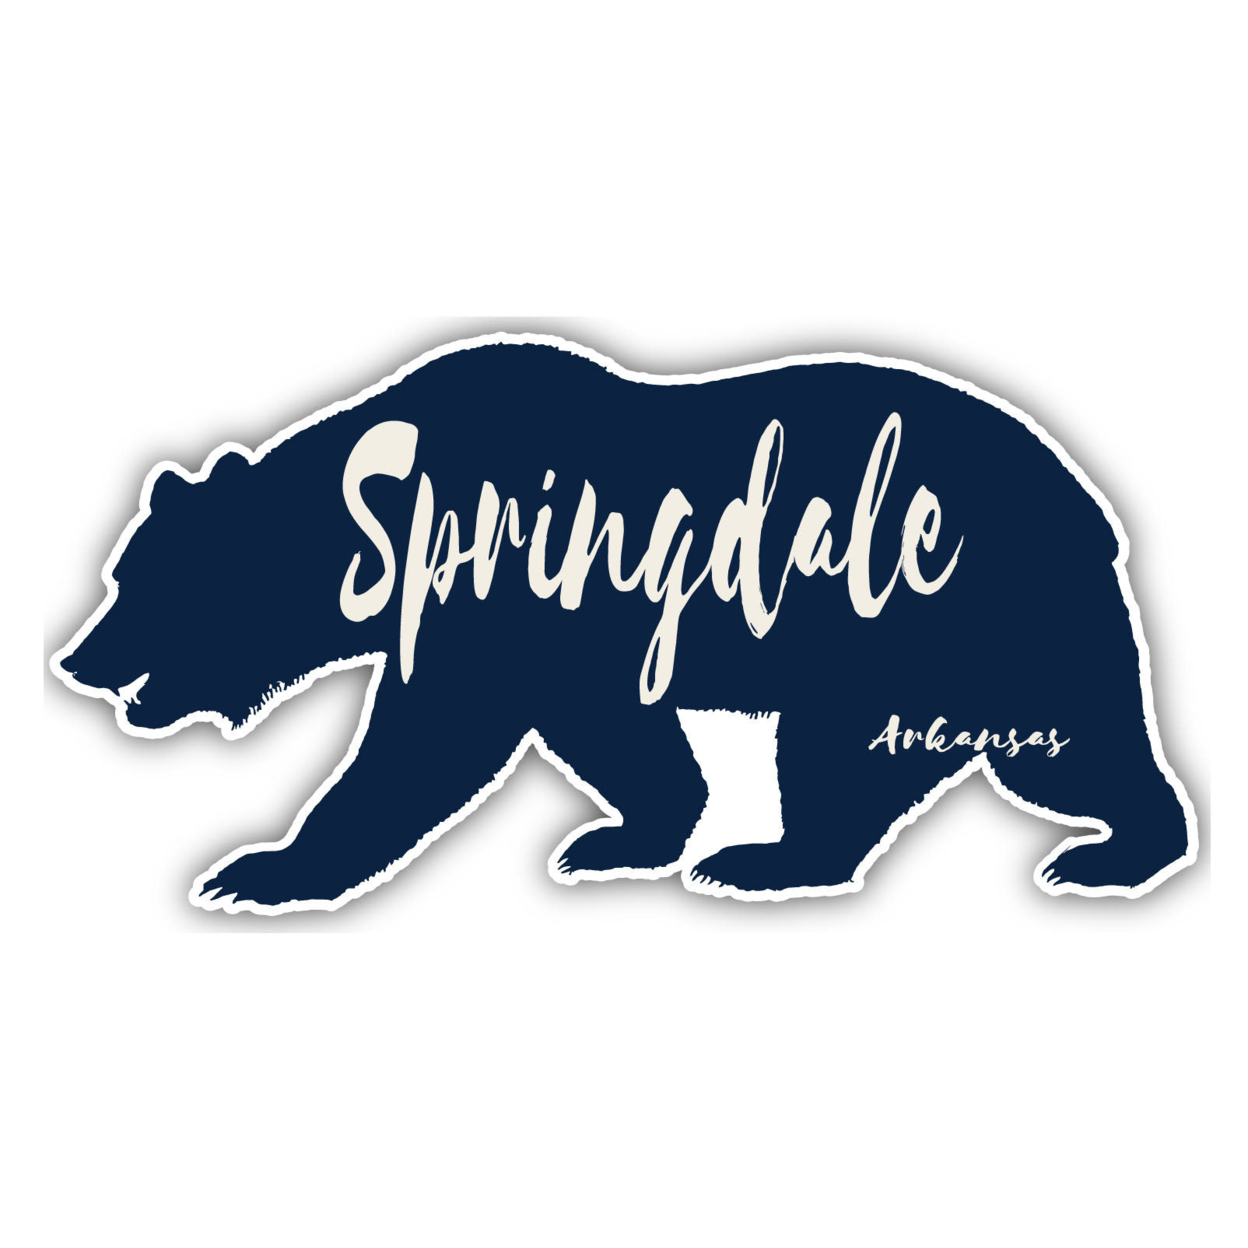 Springdale Arkansas Souvenir Decorative Stickers (Choose Theme And Size) - Single Unit, 2-Inch, Tent